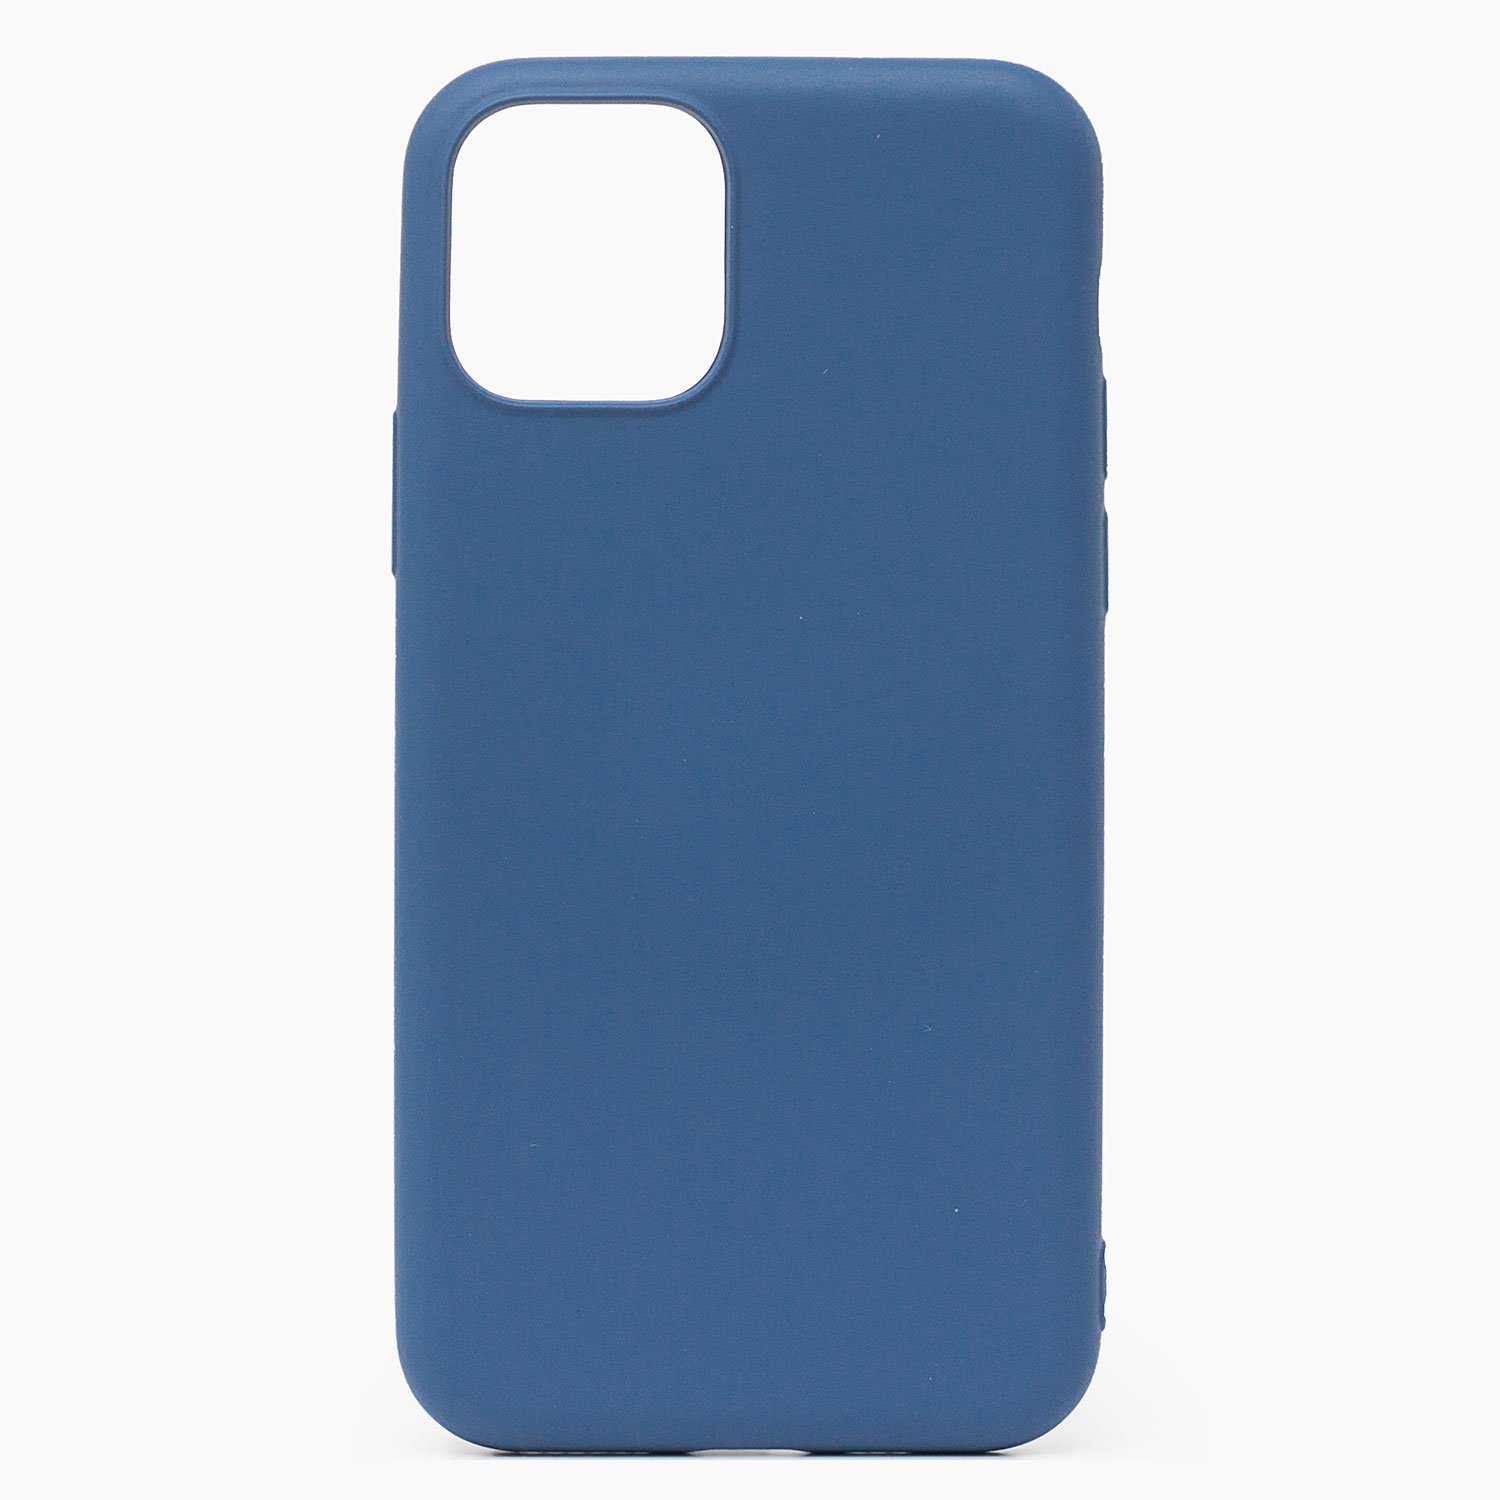 Чехол-накладка Activ Original Design для смартфона Apple iPhone 11 Pro Max, soft-touch, синий (115557)